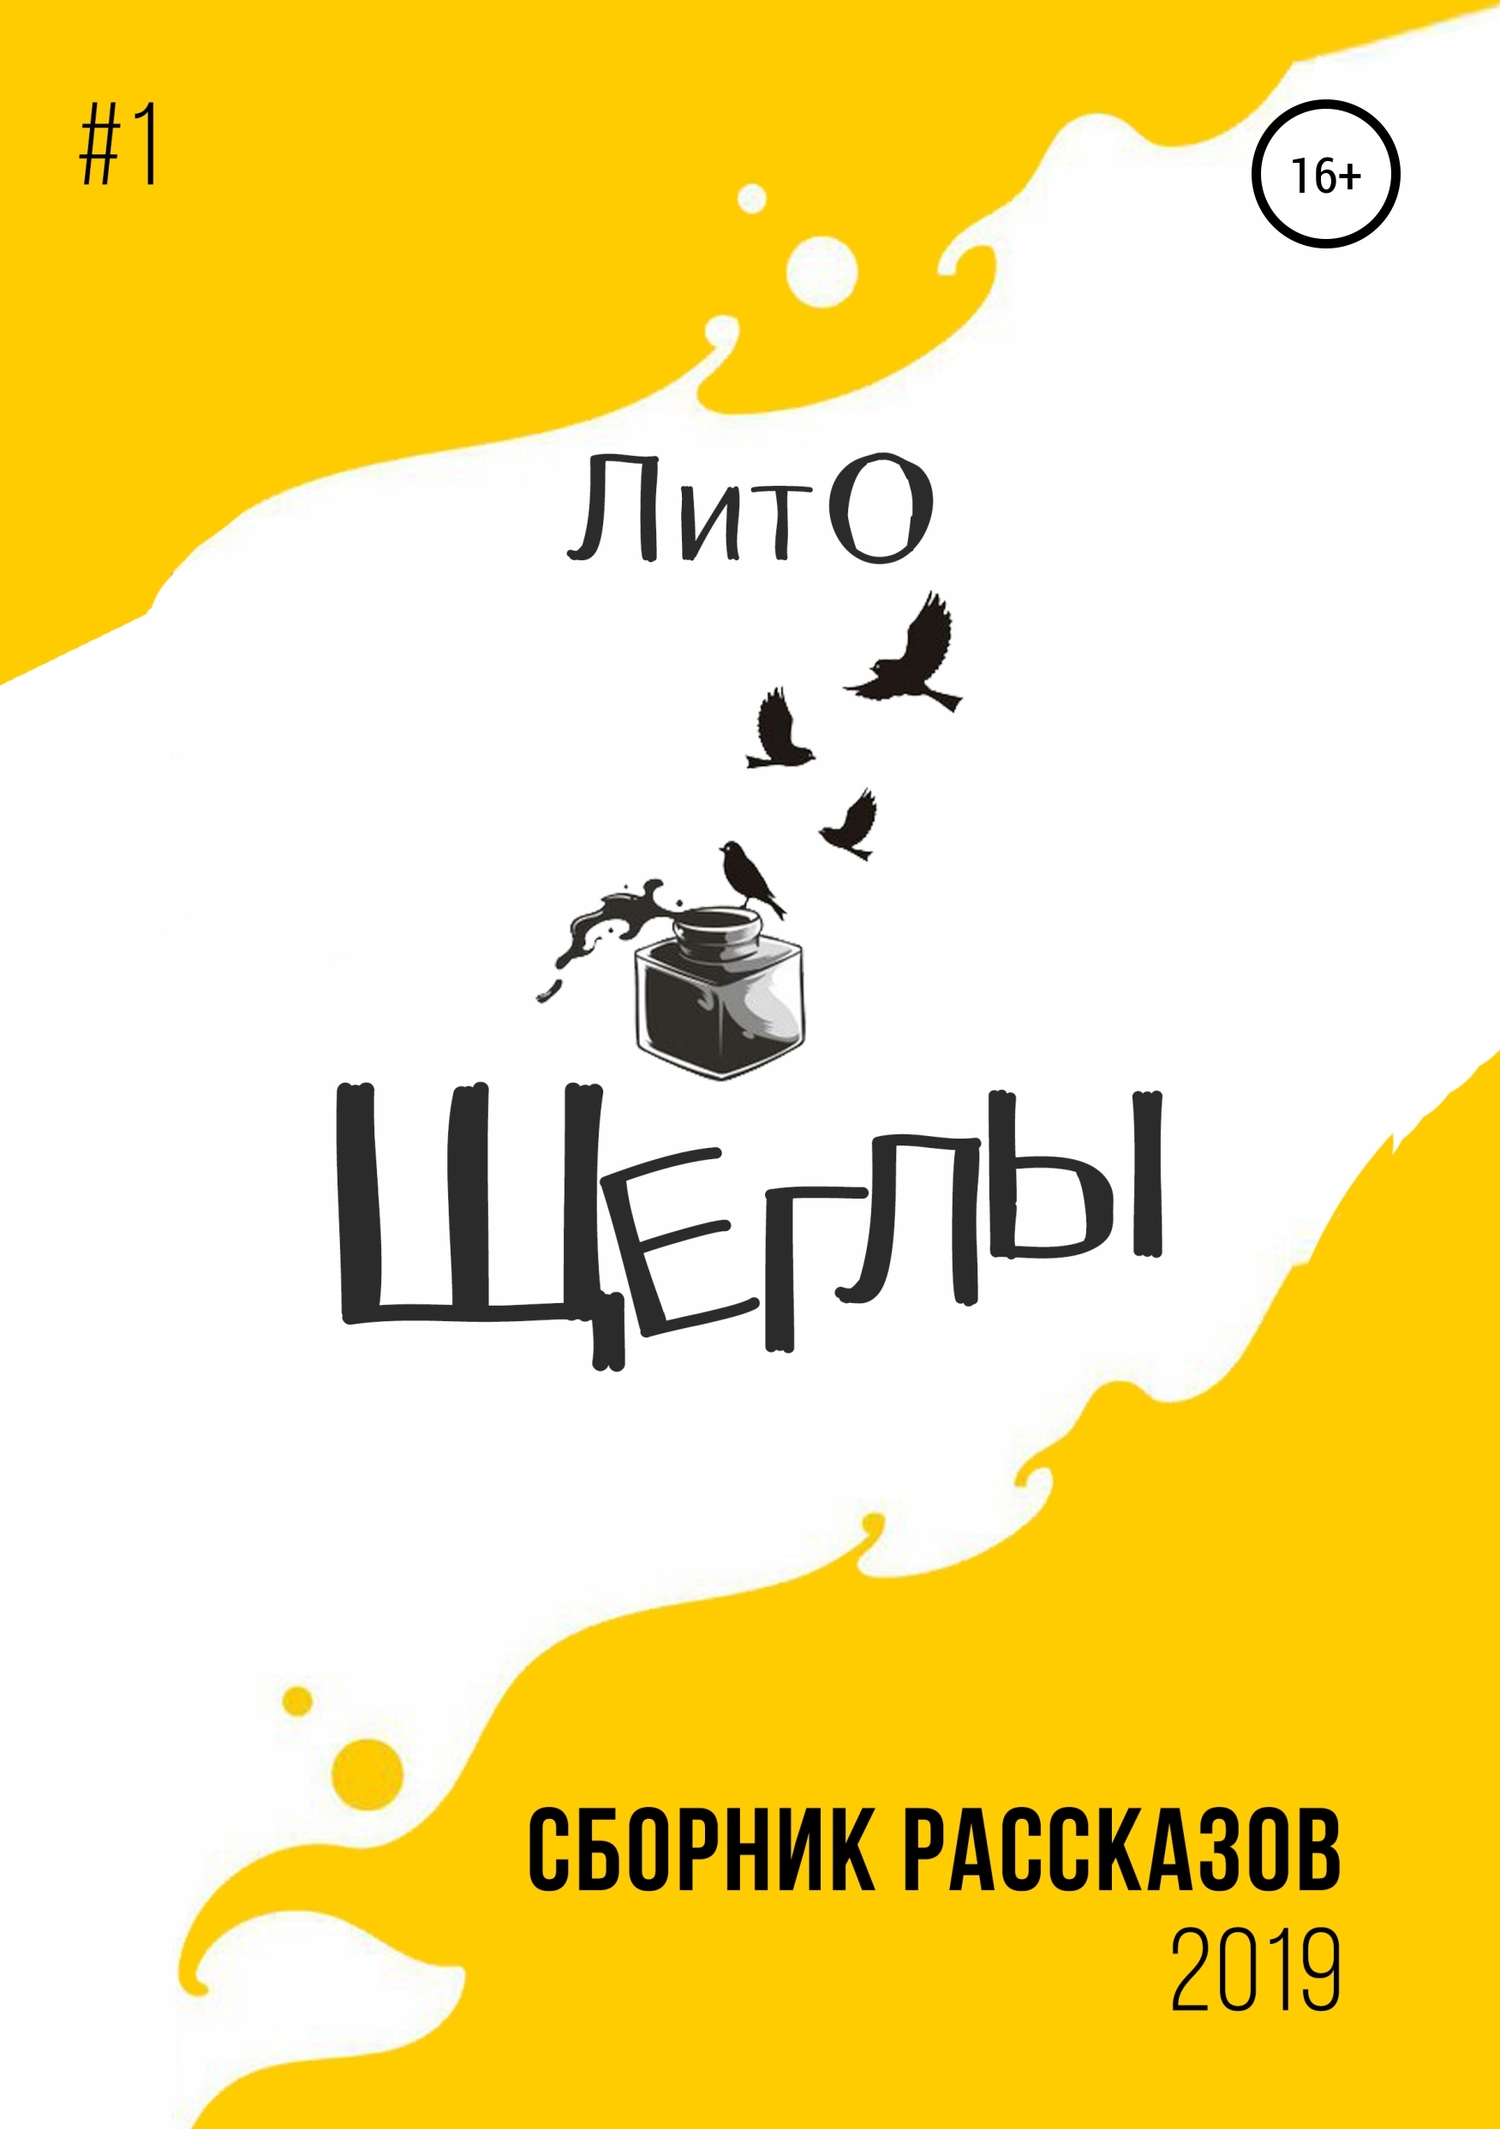 Сборник рассказов ЛитО «Щеглы» (fb2)